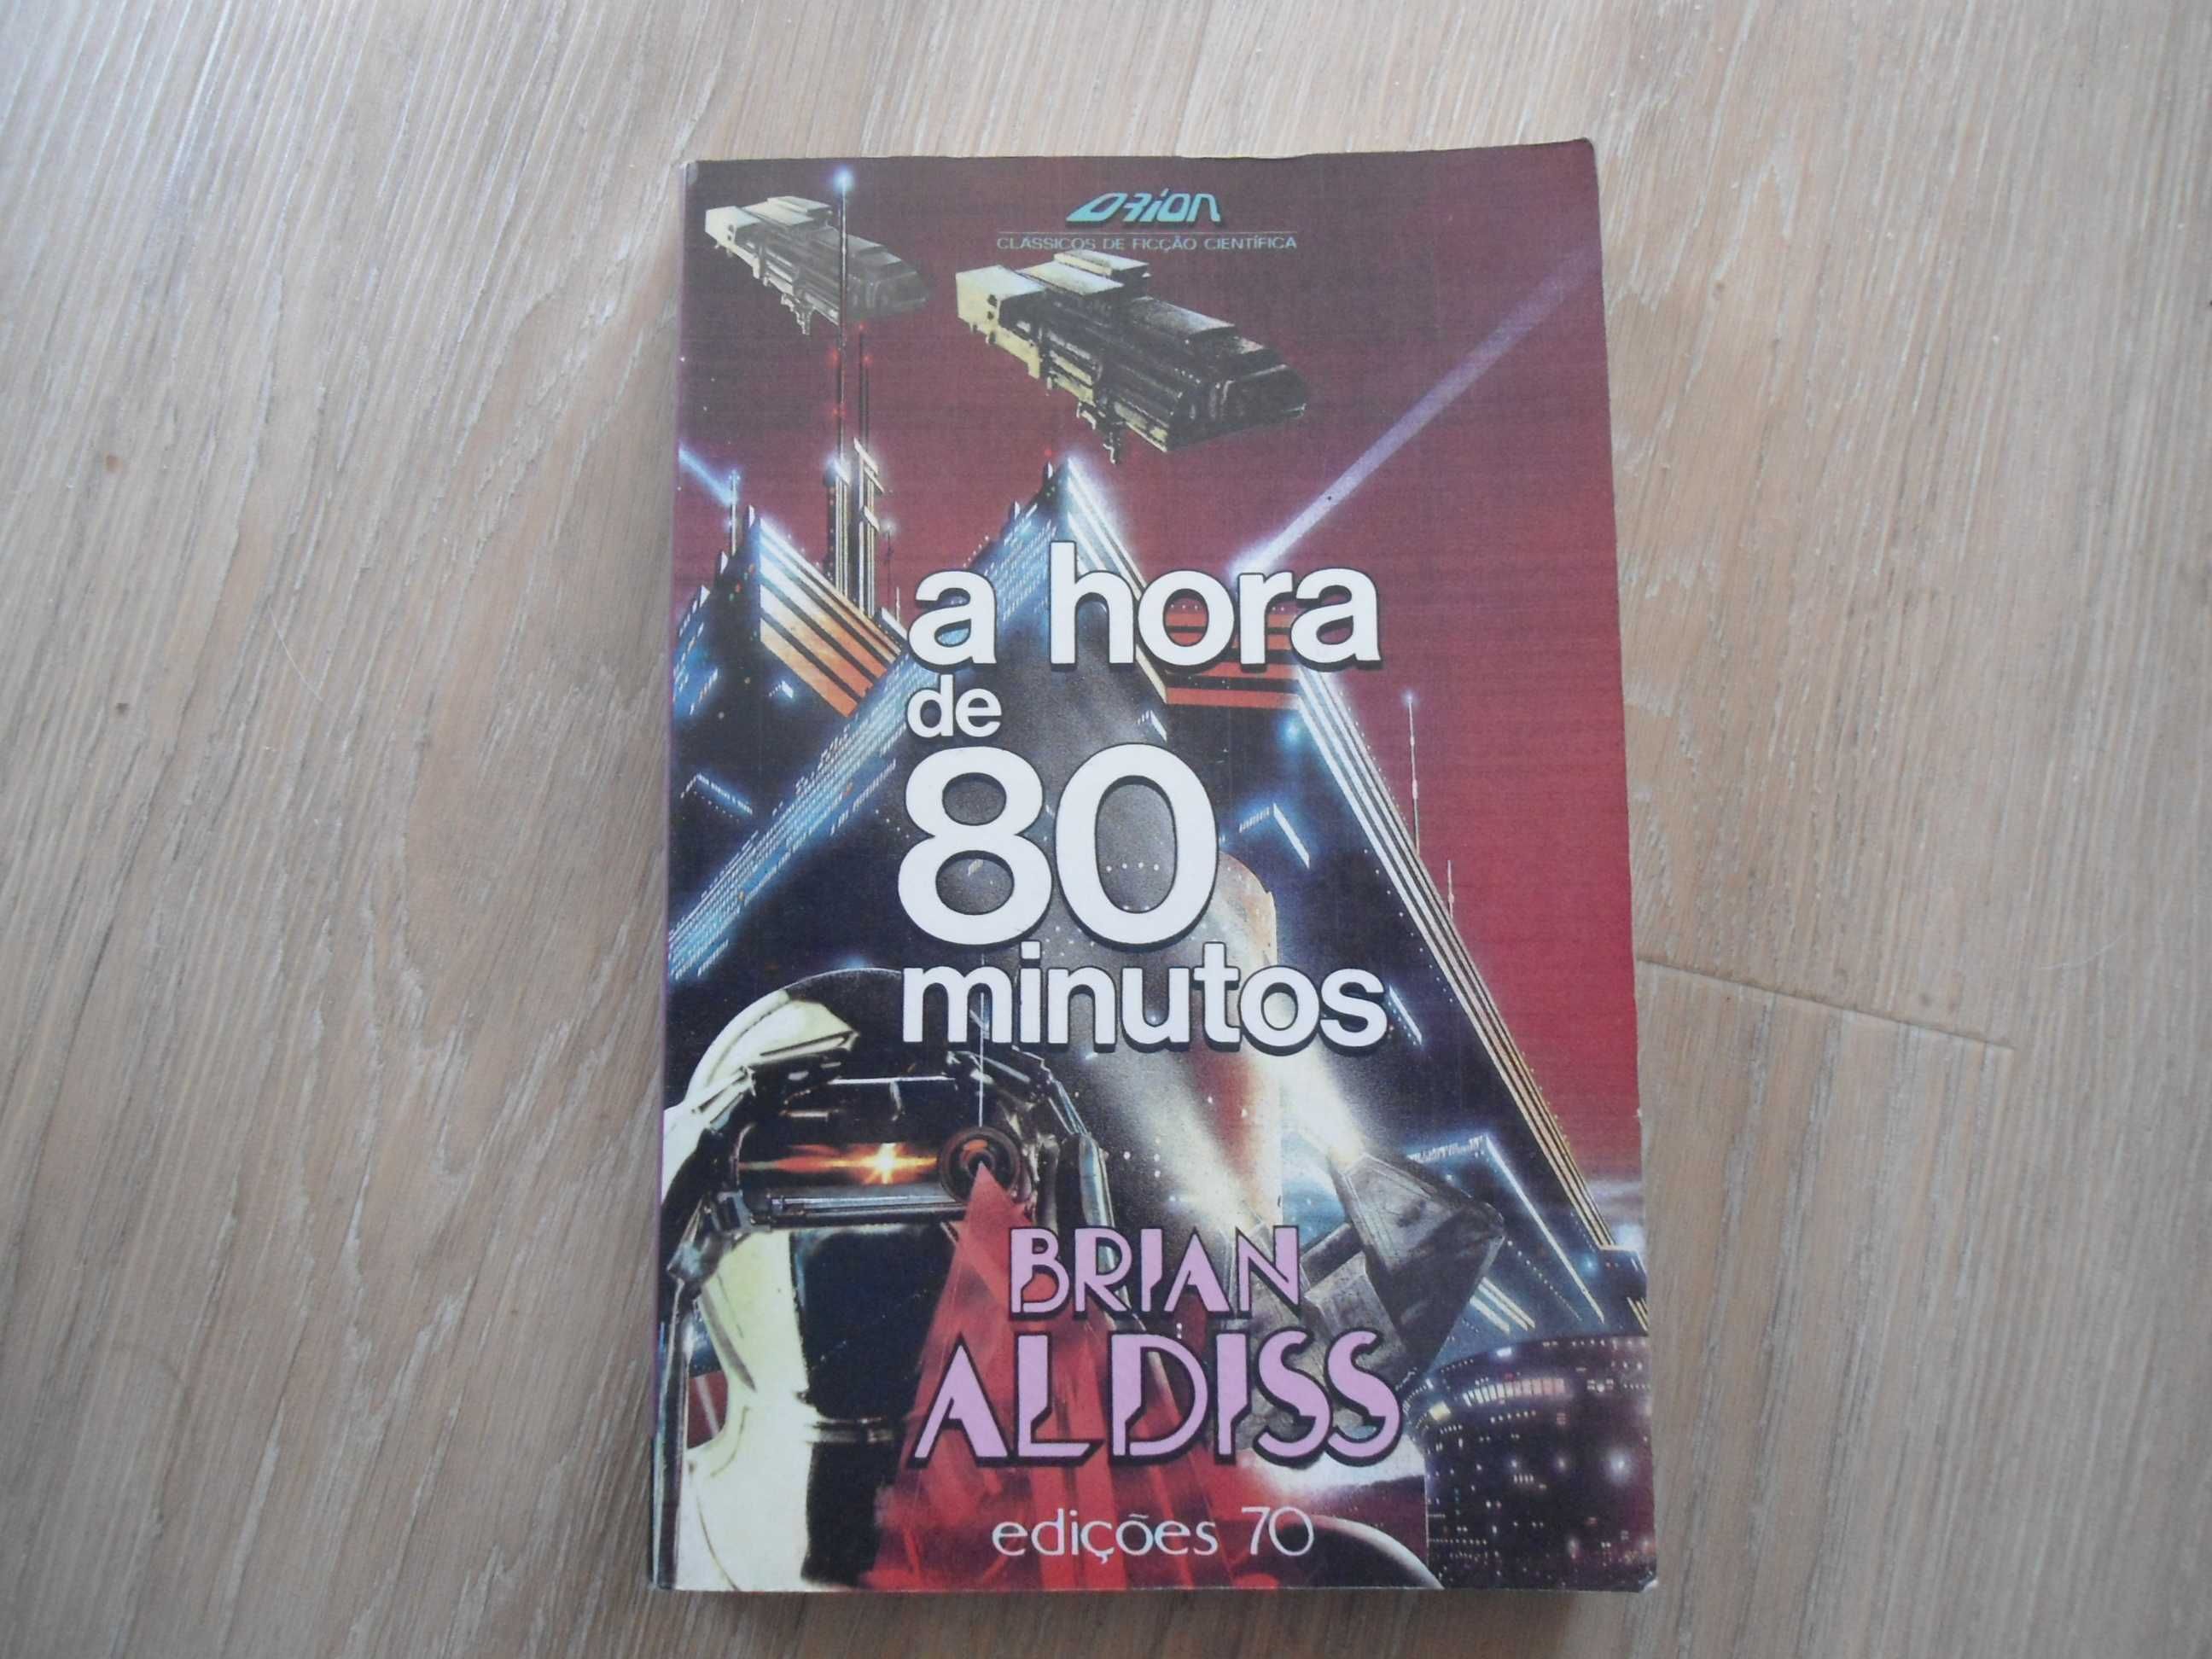 A Hora de 80 minutos por Brian Aldiss (1992)